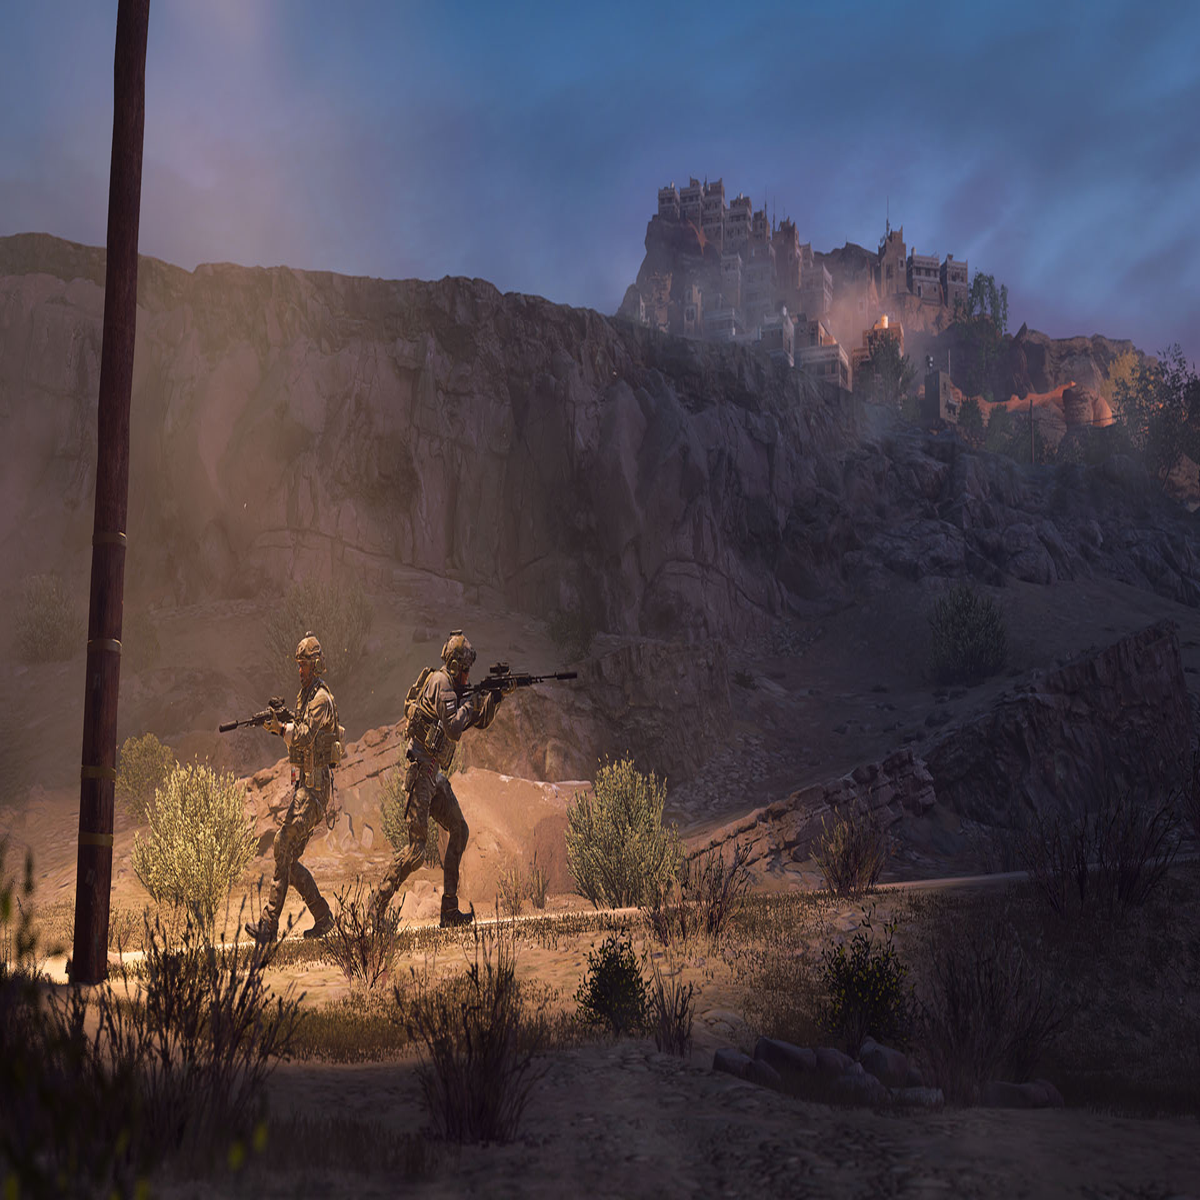 Modern Warfare 2 leak reveals Ghost's whole face & fans are losing